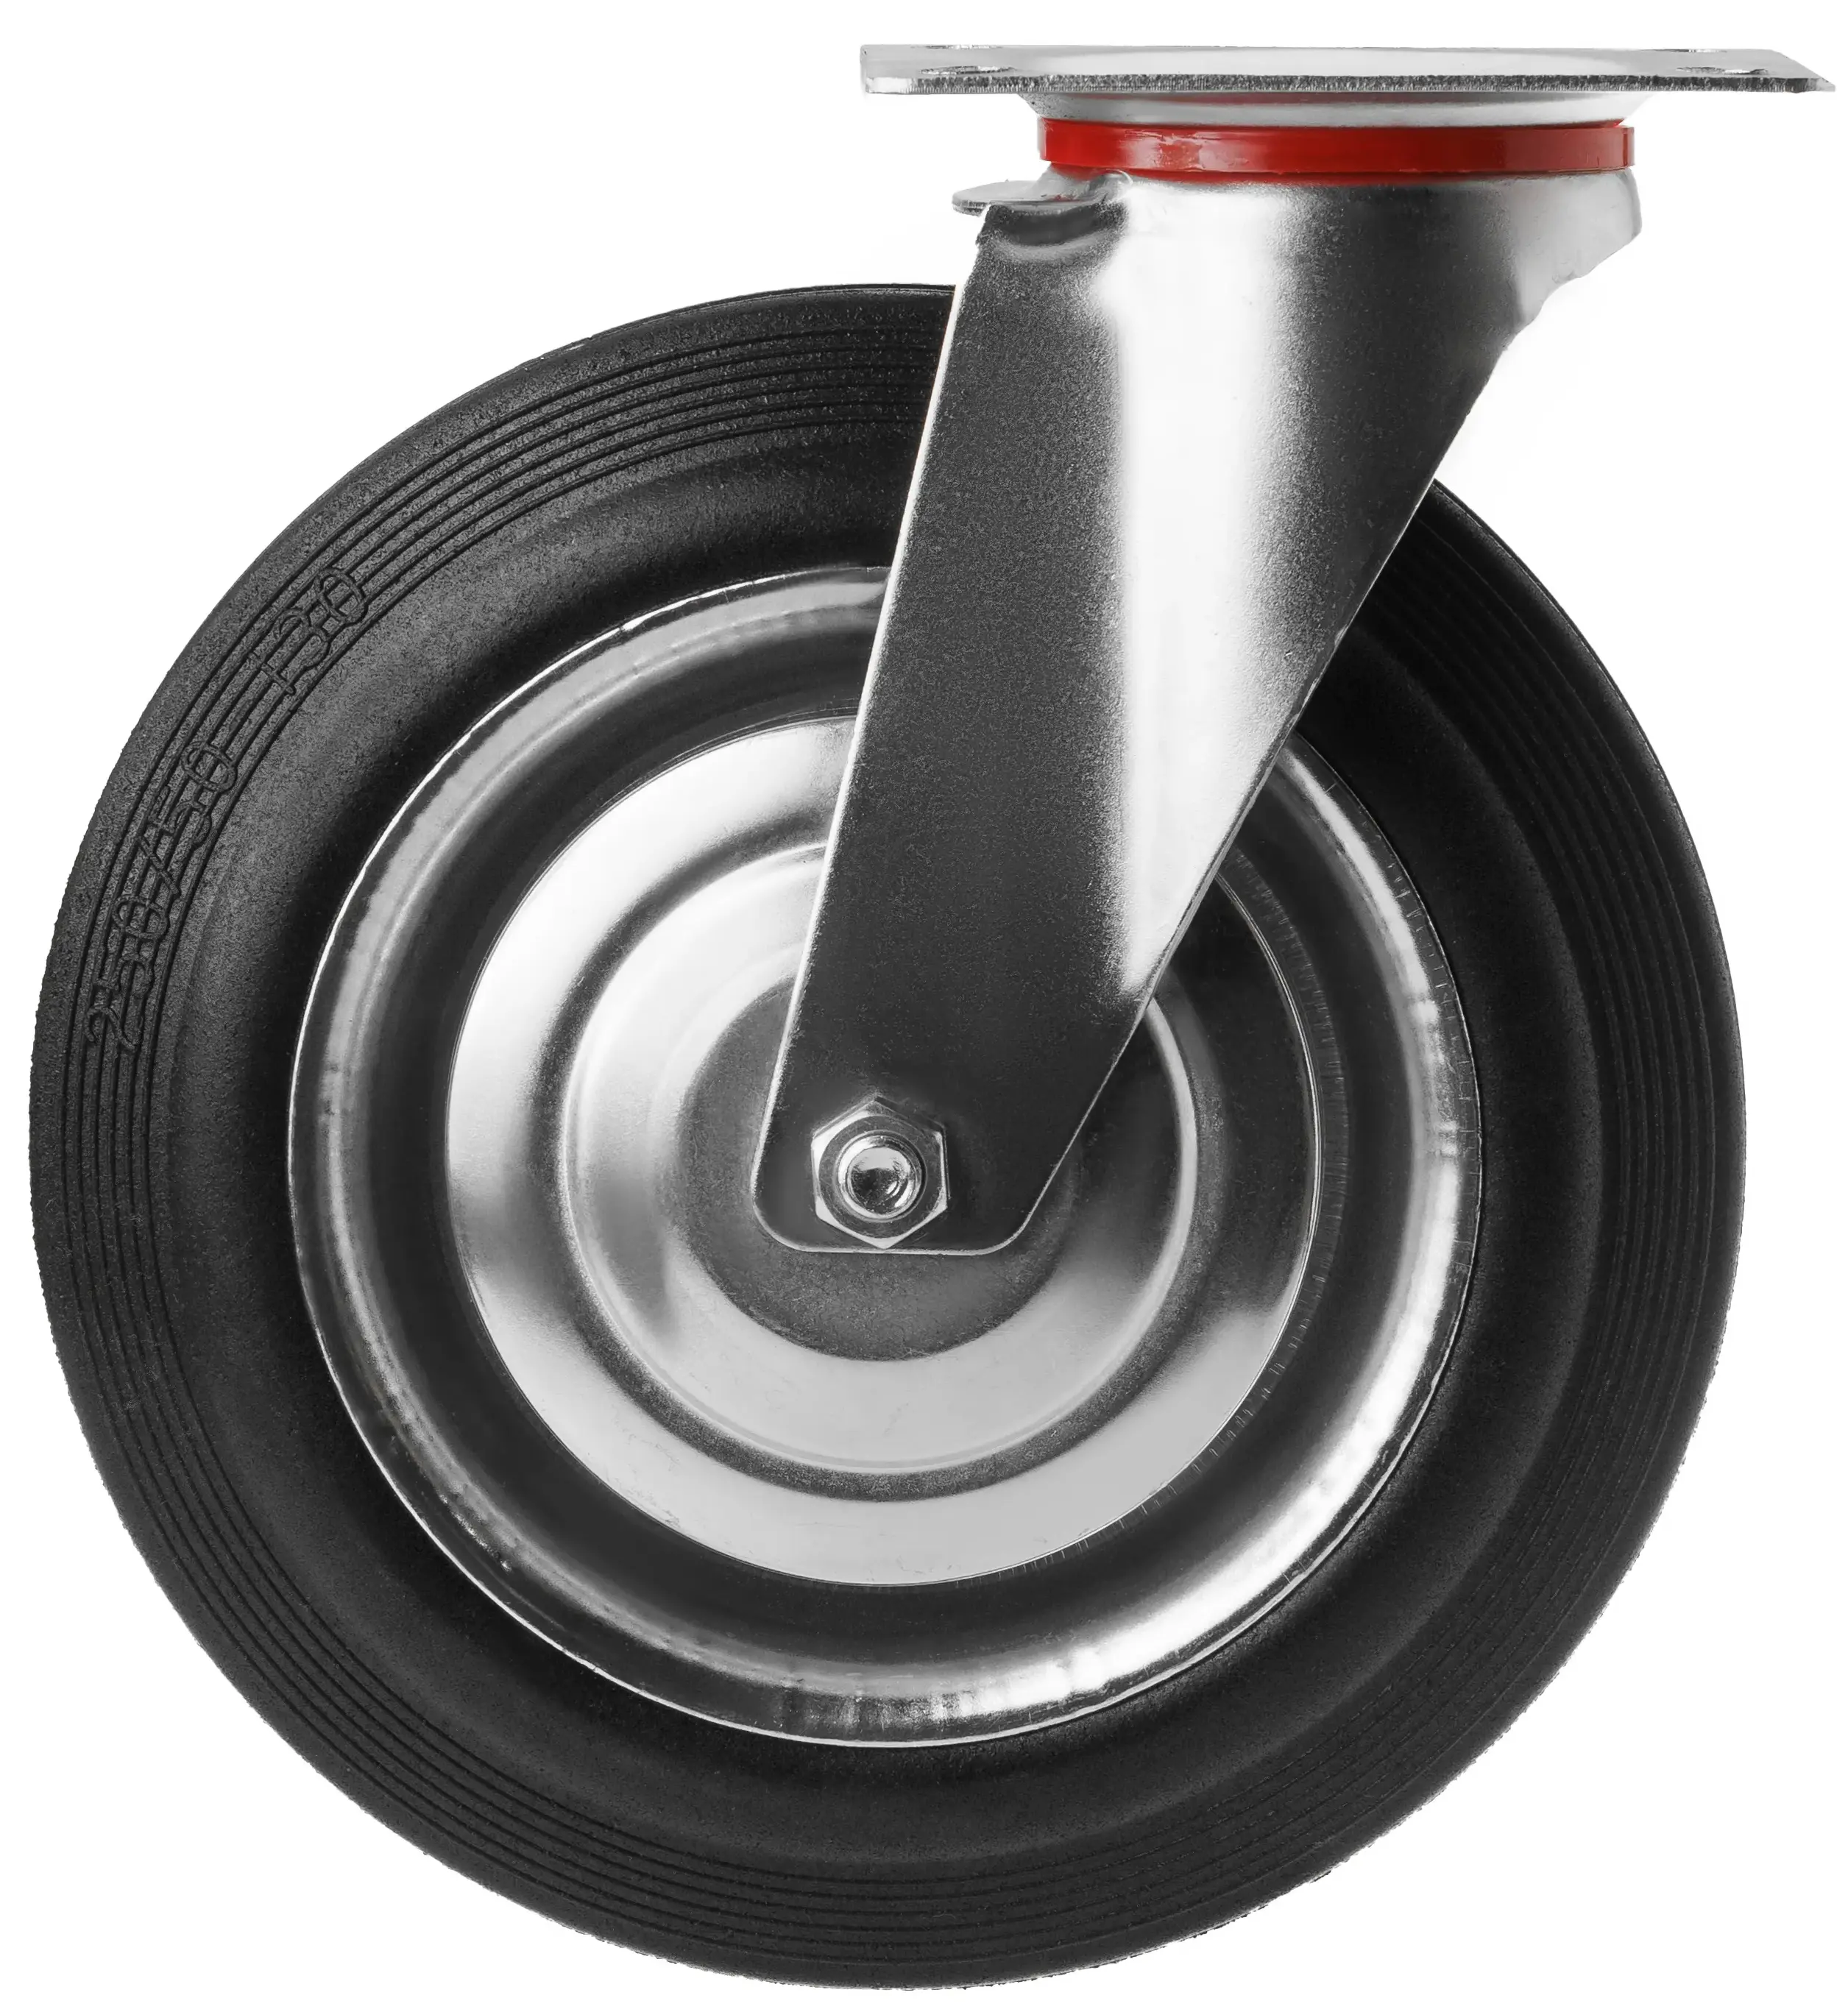 Промышленное колесо 250 мм (площадка, поворотное, черная резина, роликоподшипник) - SC 85